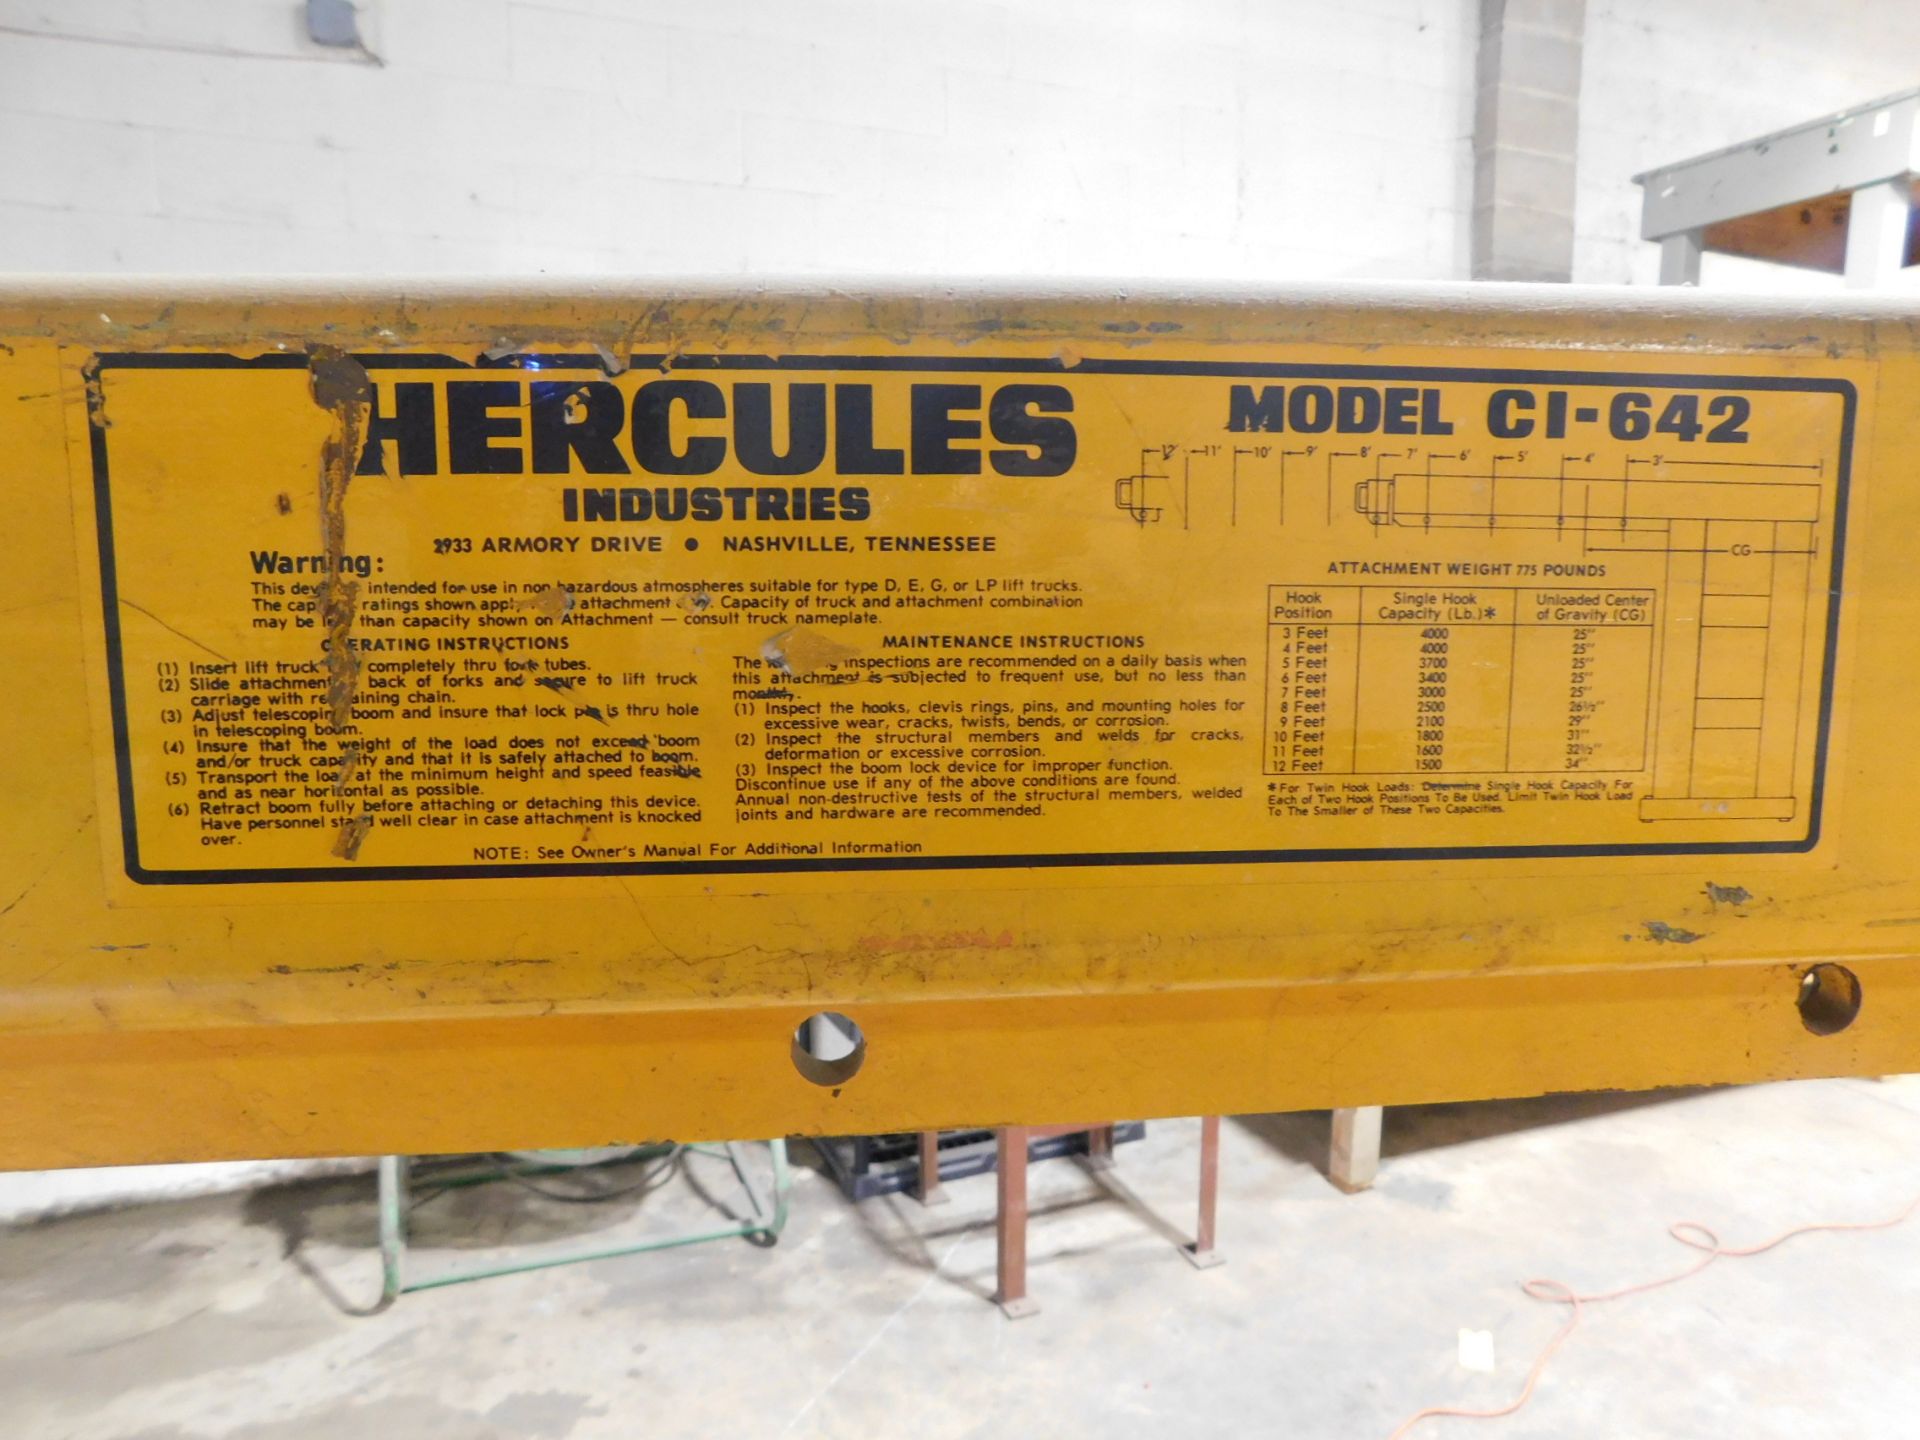 Hercules Model C1-642 Forklift Boom, Extendable Boom Arm, 4,000 lb. Cap. at 3', 1,500 lb. Cap at - Image 5 of 9